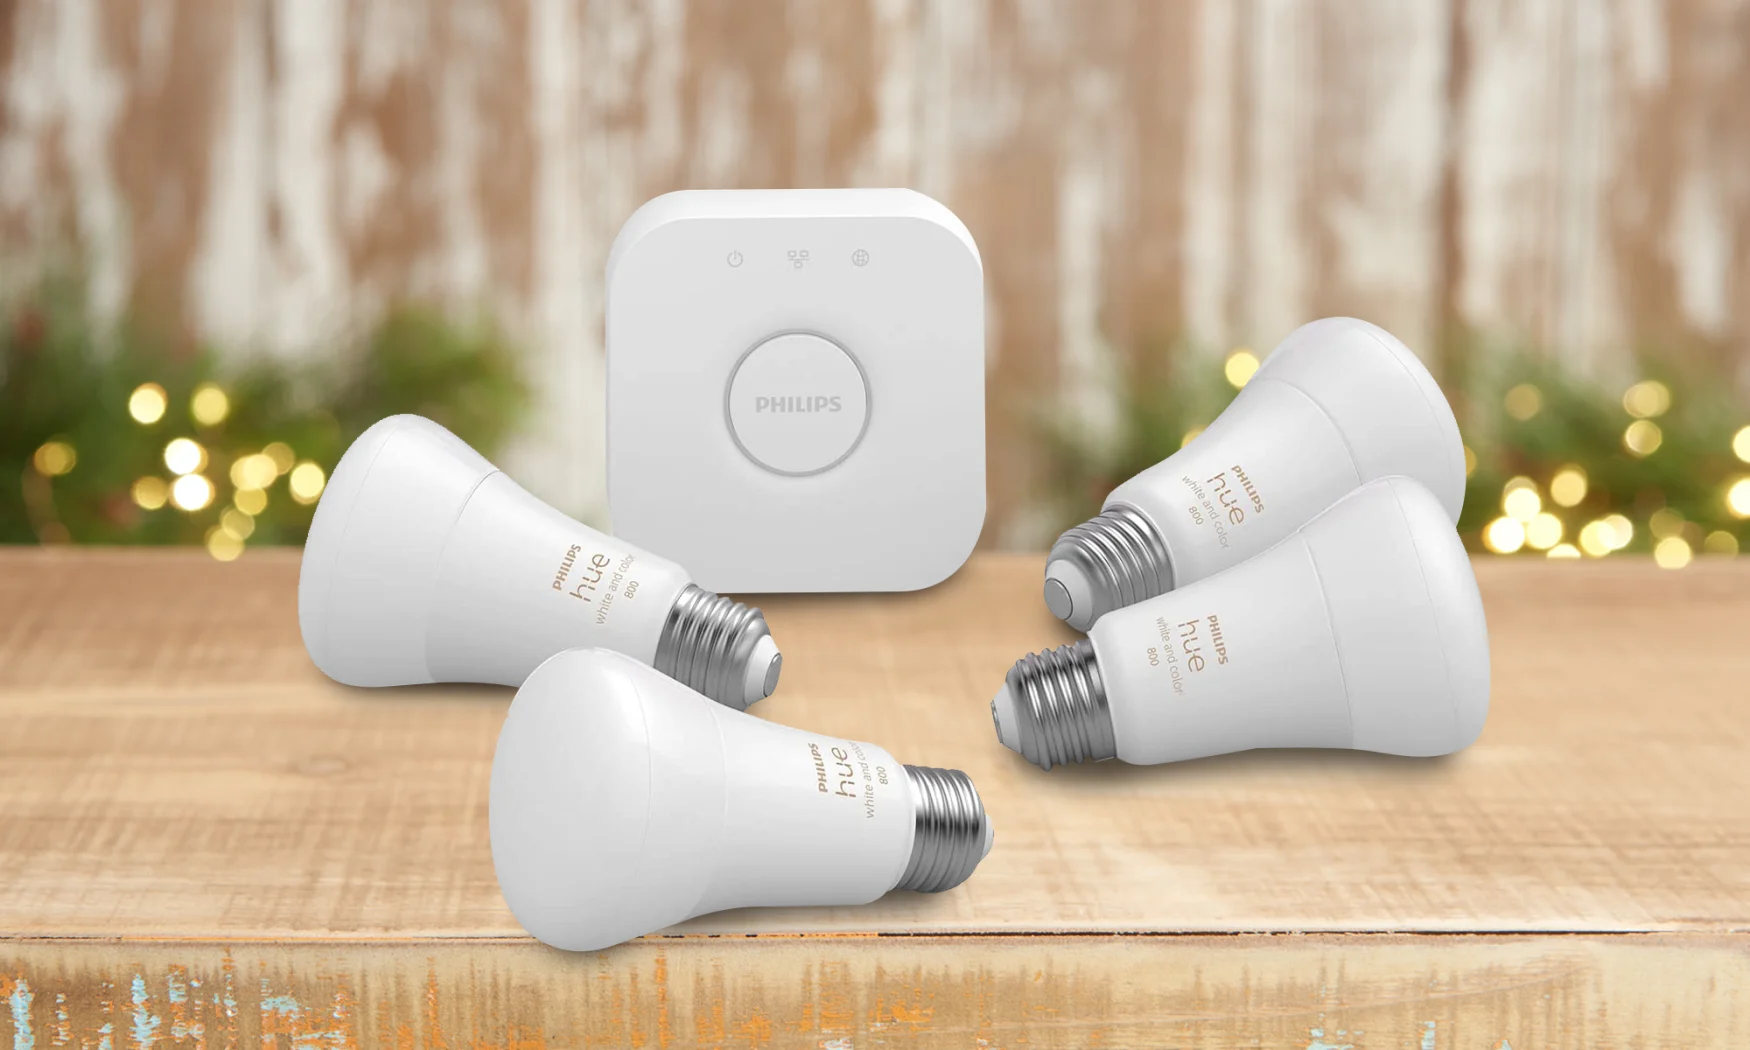 Philips LED Smart Bulb starter kit